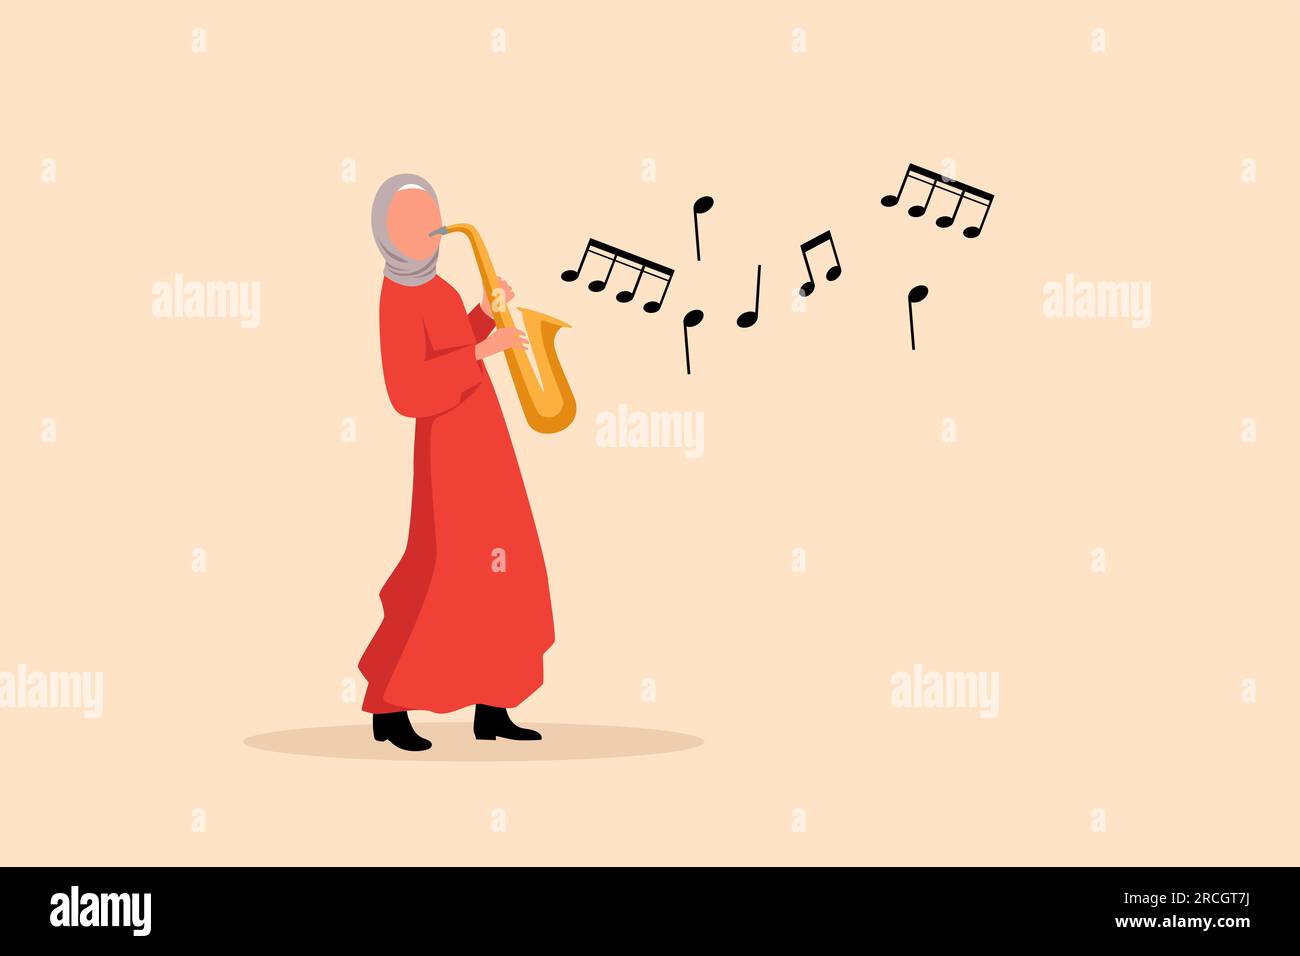 Personnage saxophoniste arabe à dessin plat d'affaires. Musicien de jazz ou de blues, femme joue du saxophone. Interprète féminine dans la musique jazz de festival, orchestre de jazz Banque D'Images